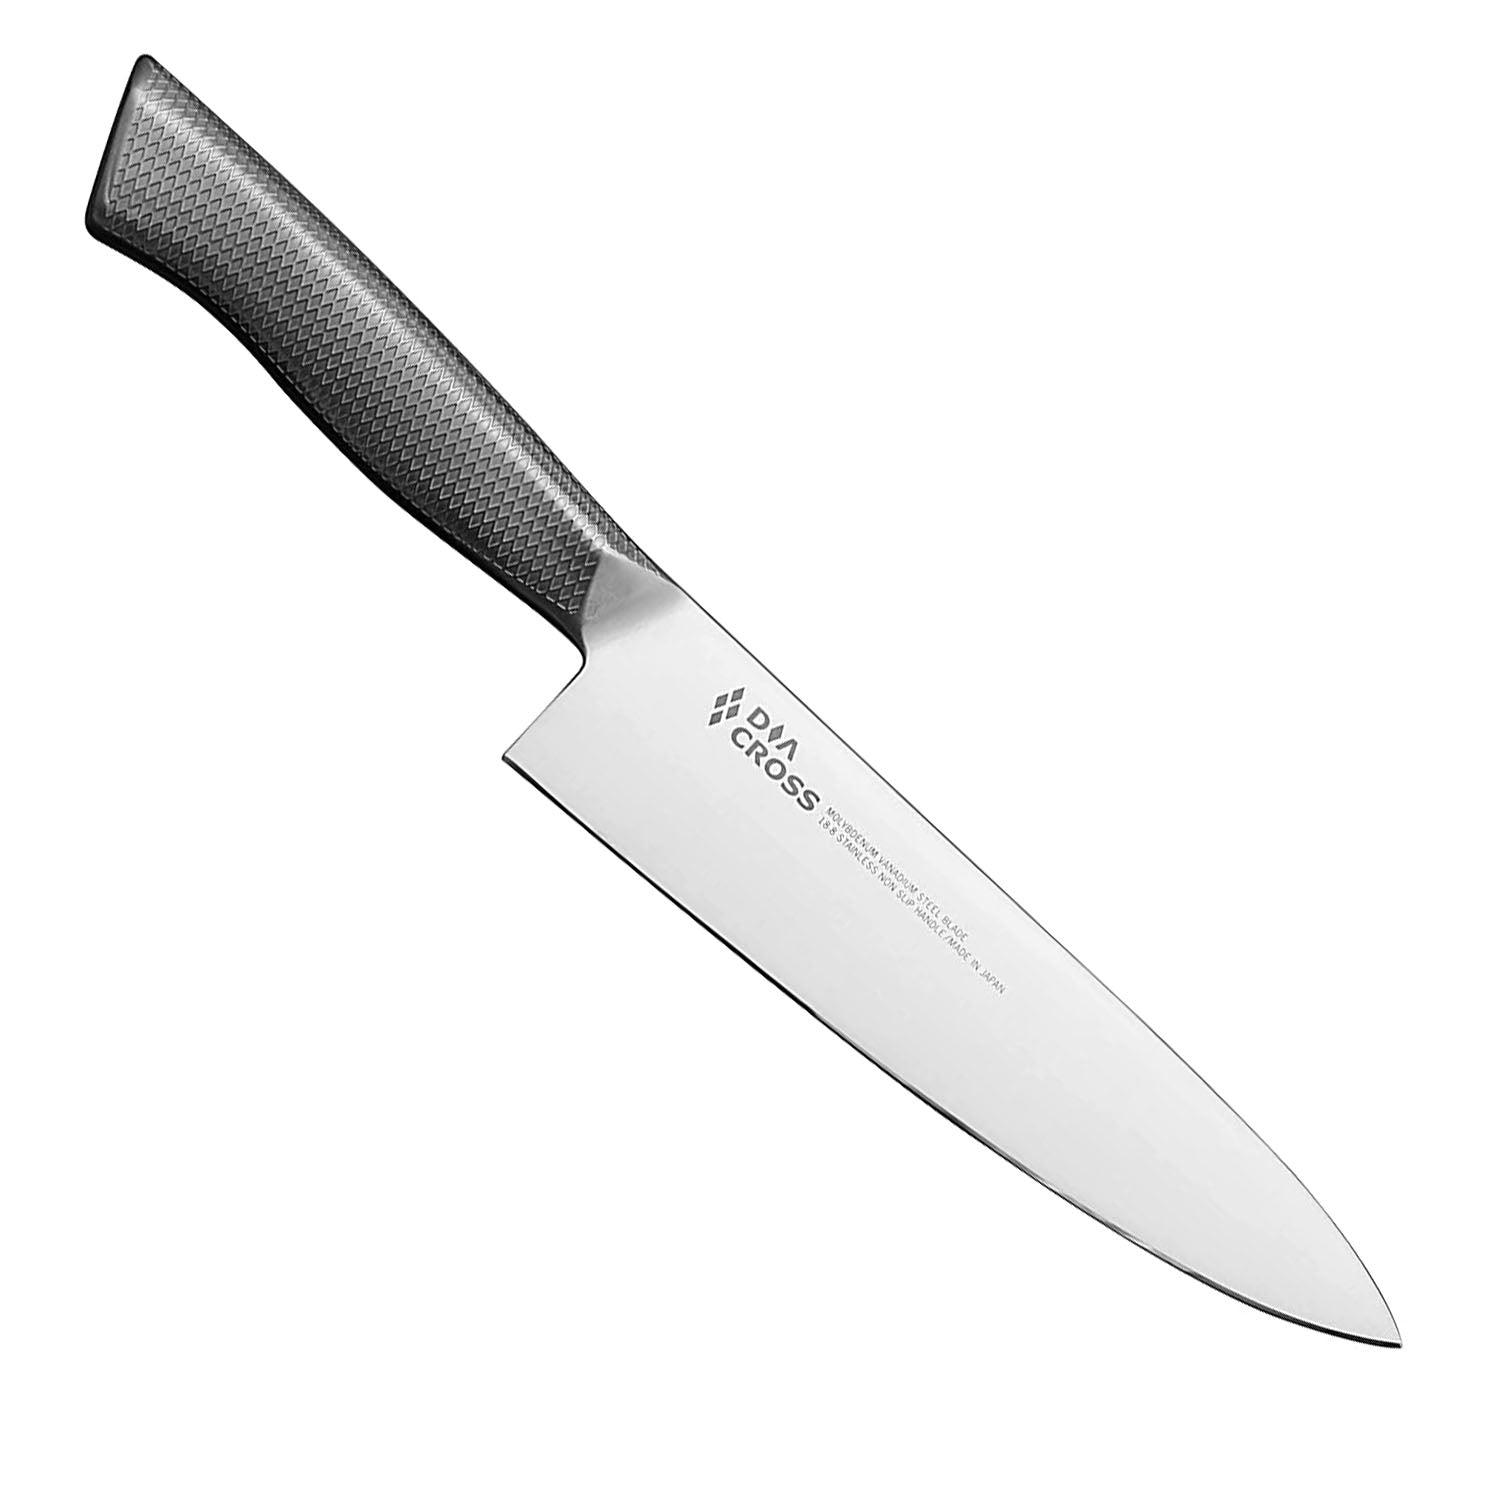 Vintage DANSK JAPAN Chef/Butcher Knife Sharpening Steel w/Wood Handle